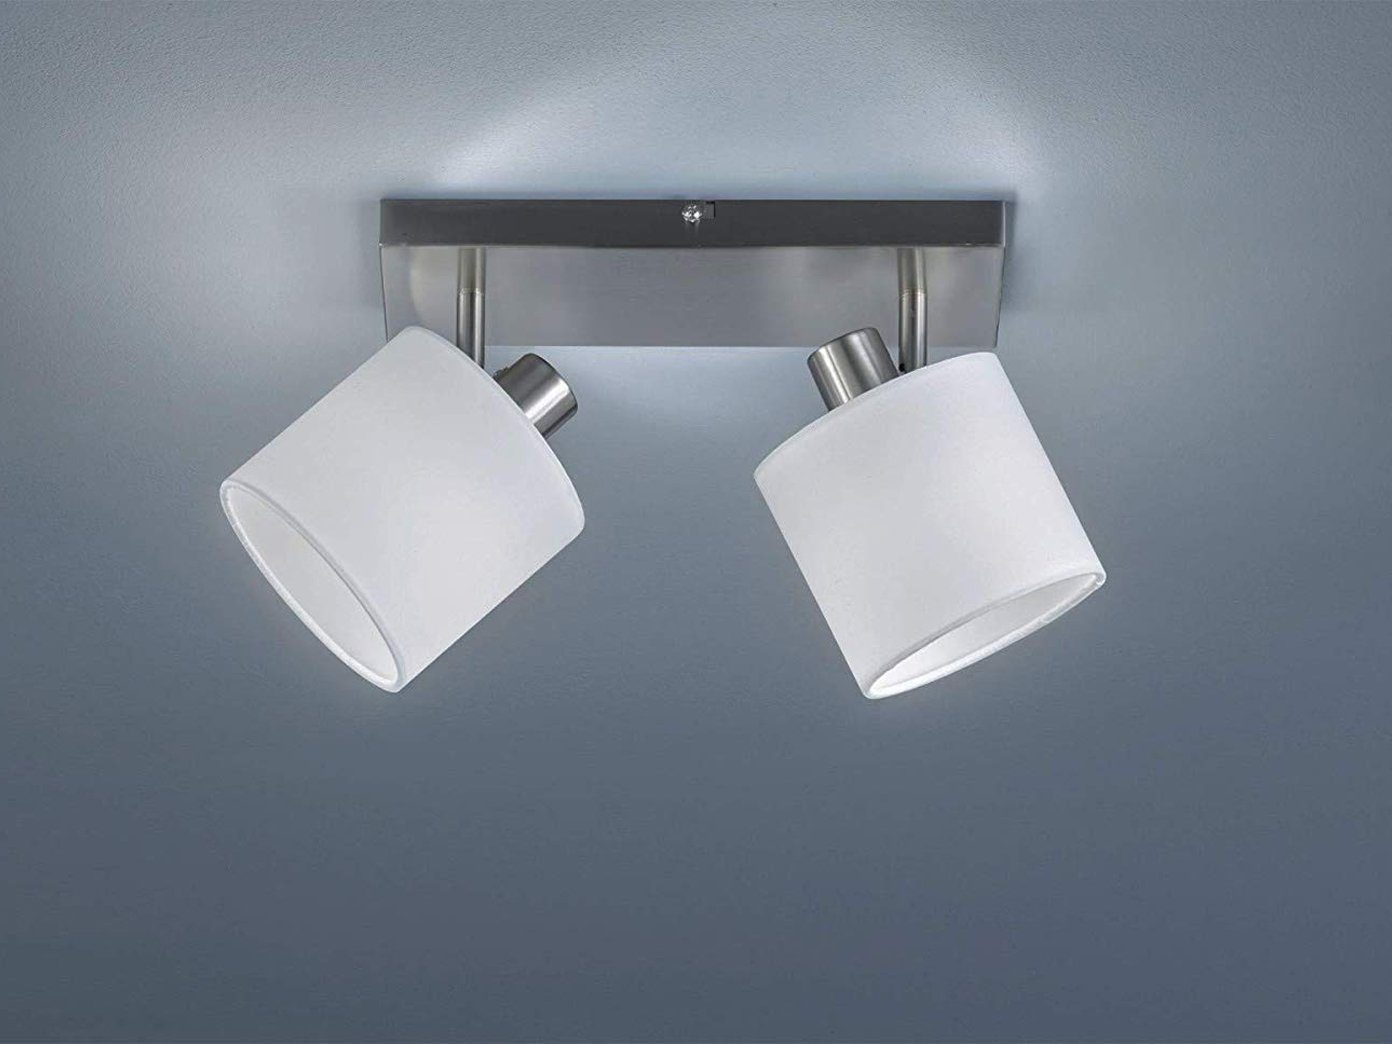 LED Decken Strahler rund weiß Design grau Beleuchtung Küche Flur Spot Leuchte